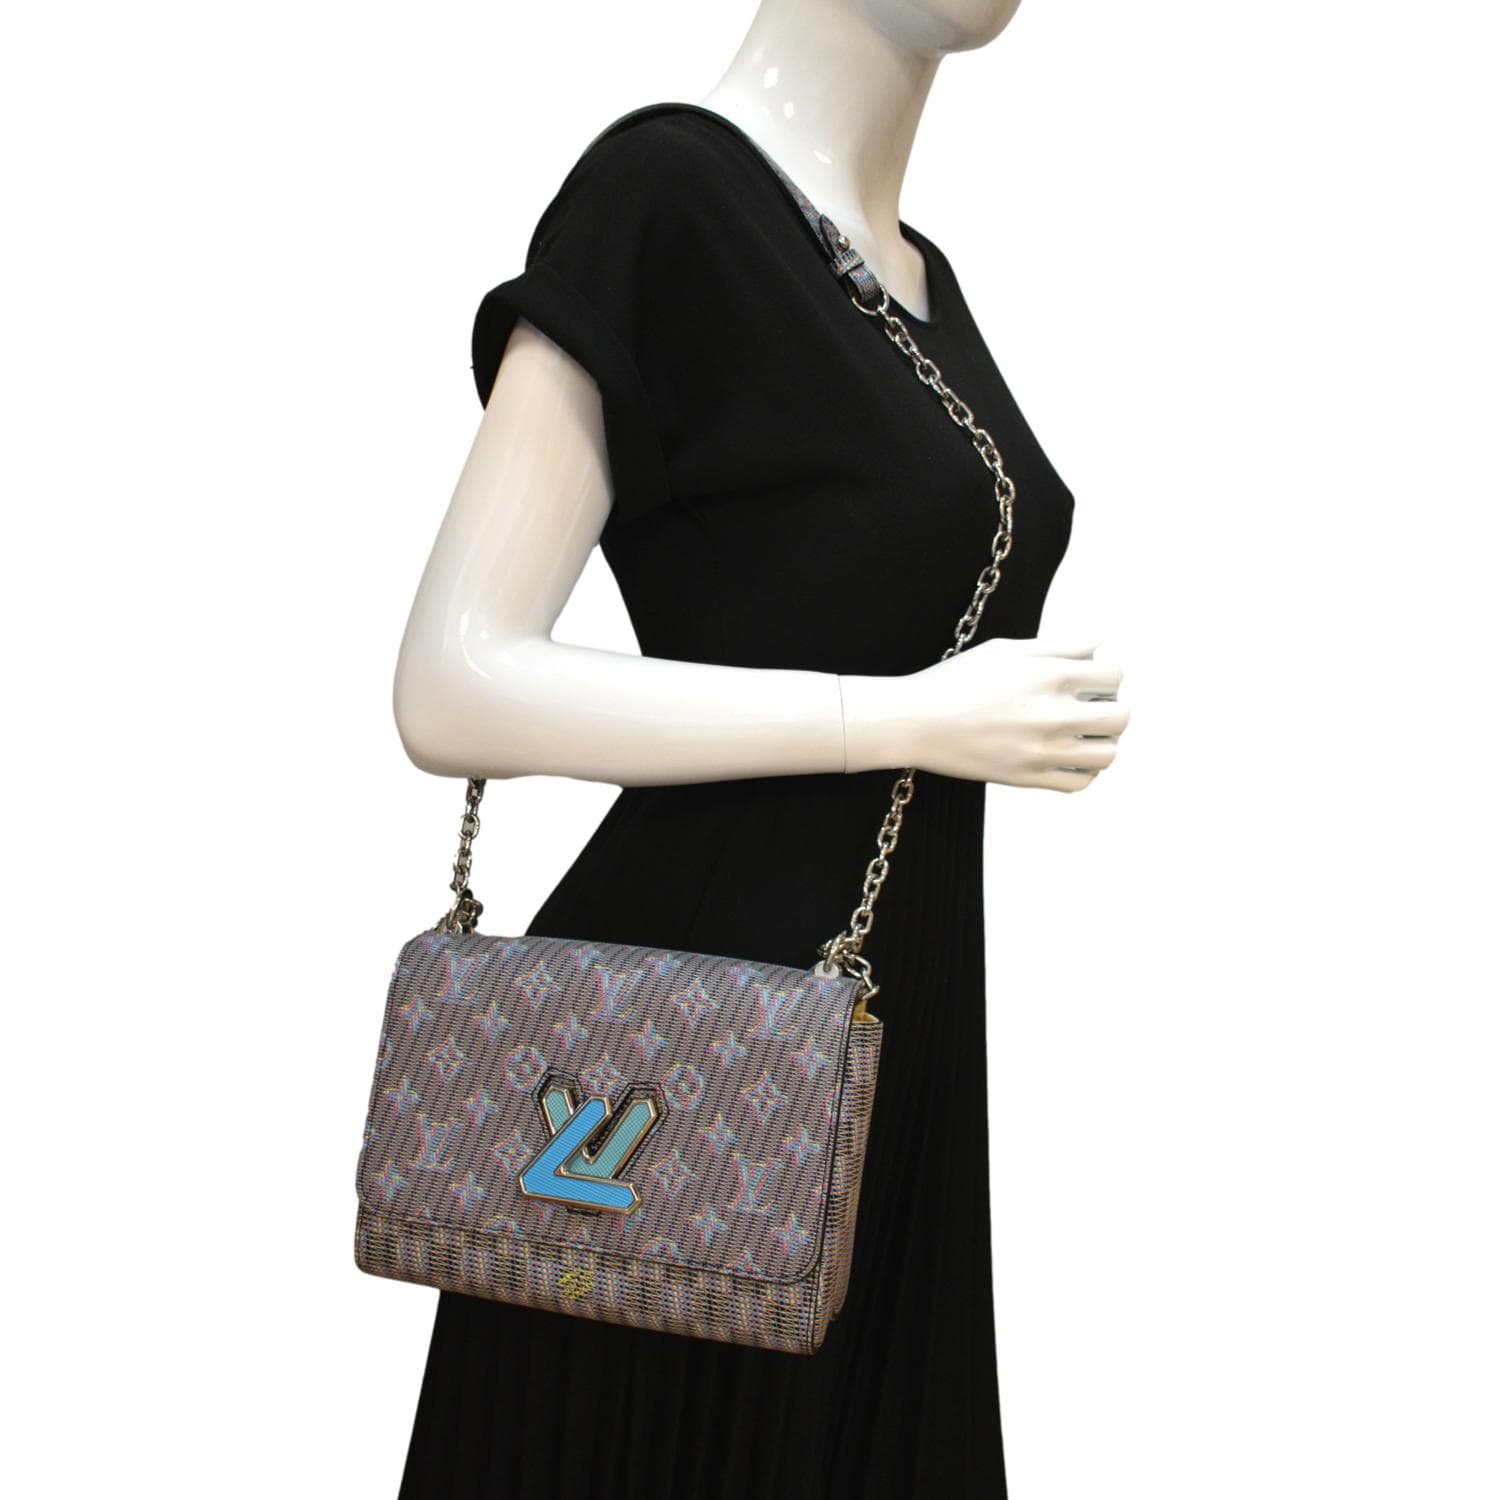 lv handbags for women blue